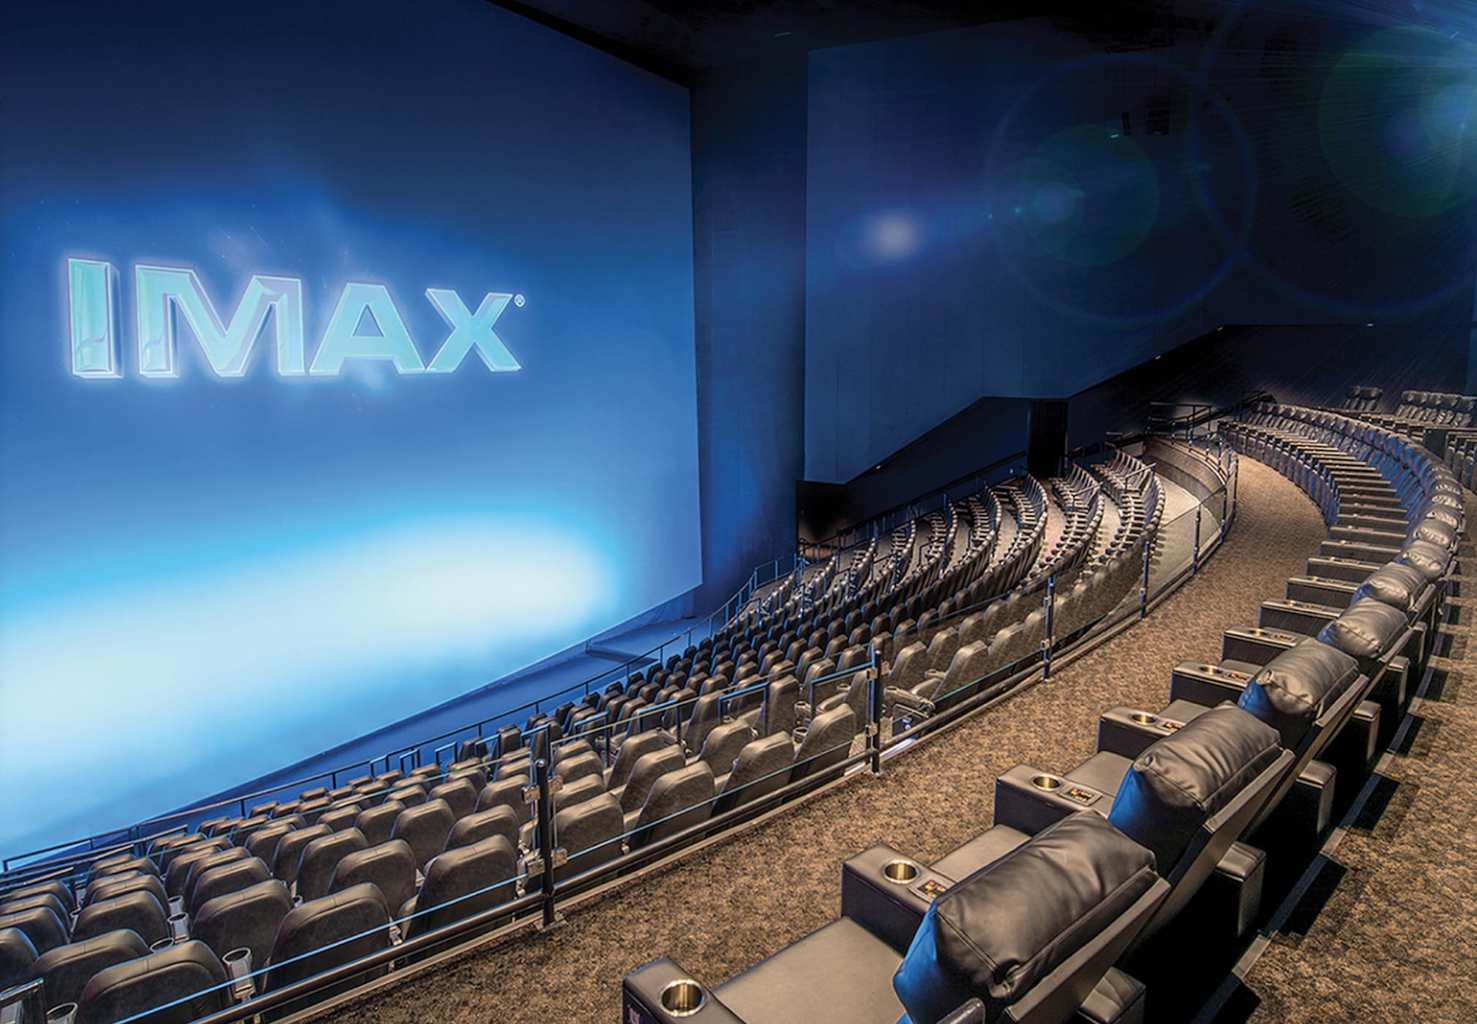 imax theatre entertainment complex in branson